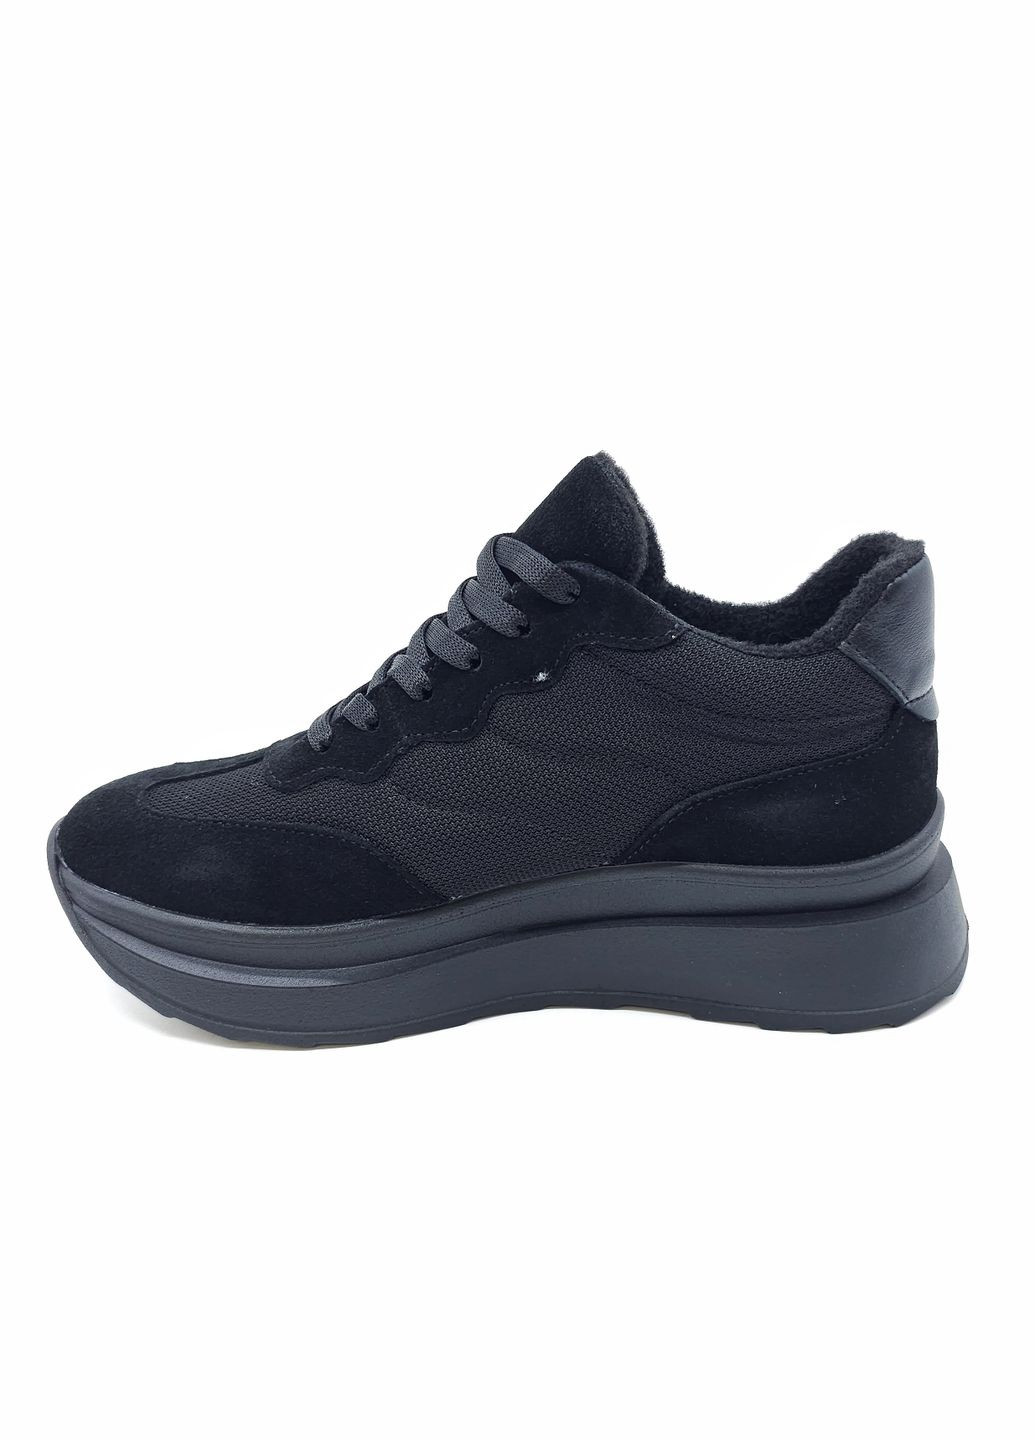 Черные всесезонные женские кроссовки черные кожаные mr-12-5 23,5 см (р) Morento